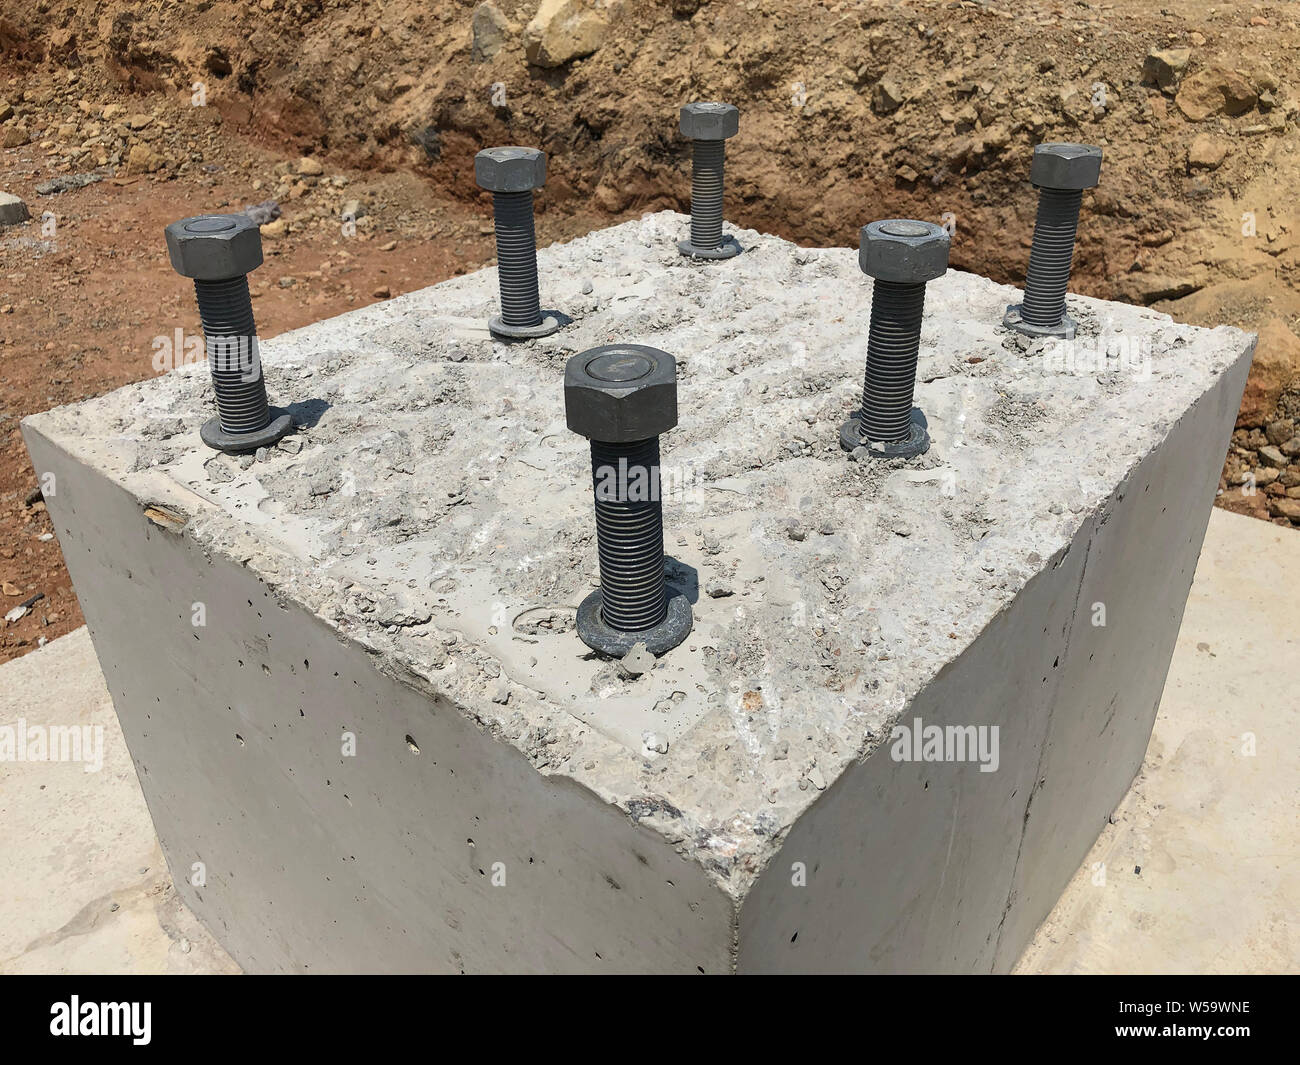 Stahlbeton Fundament mit Metall Anker Schrauben für die Montage von Metall  Säulen gestaltet. Gründung der Lager für den Bau sitzen Stockfotografie -  Alamy